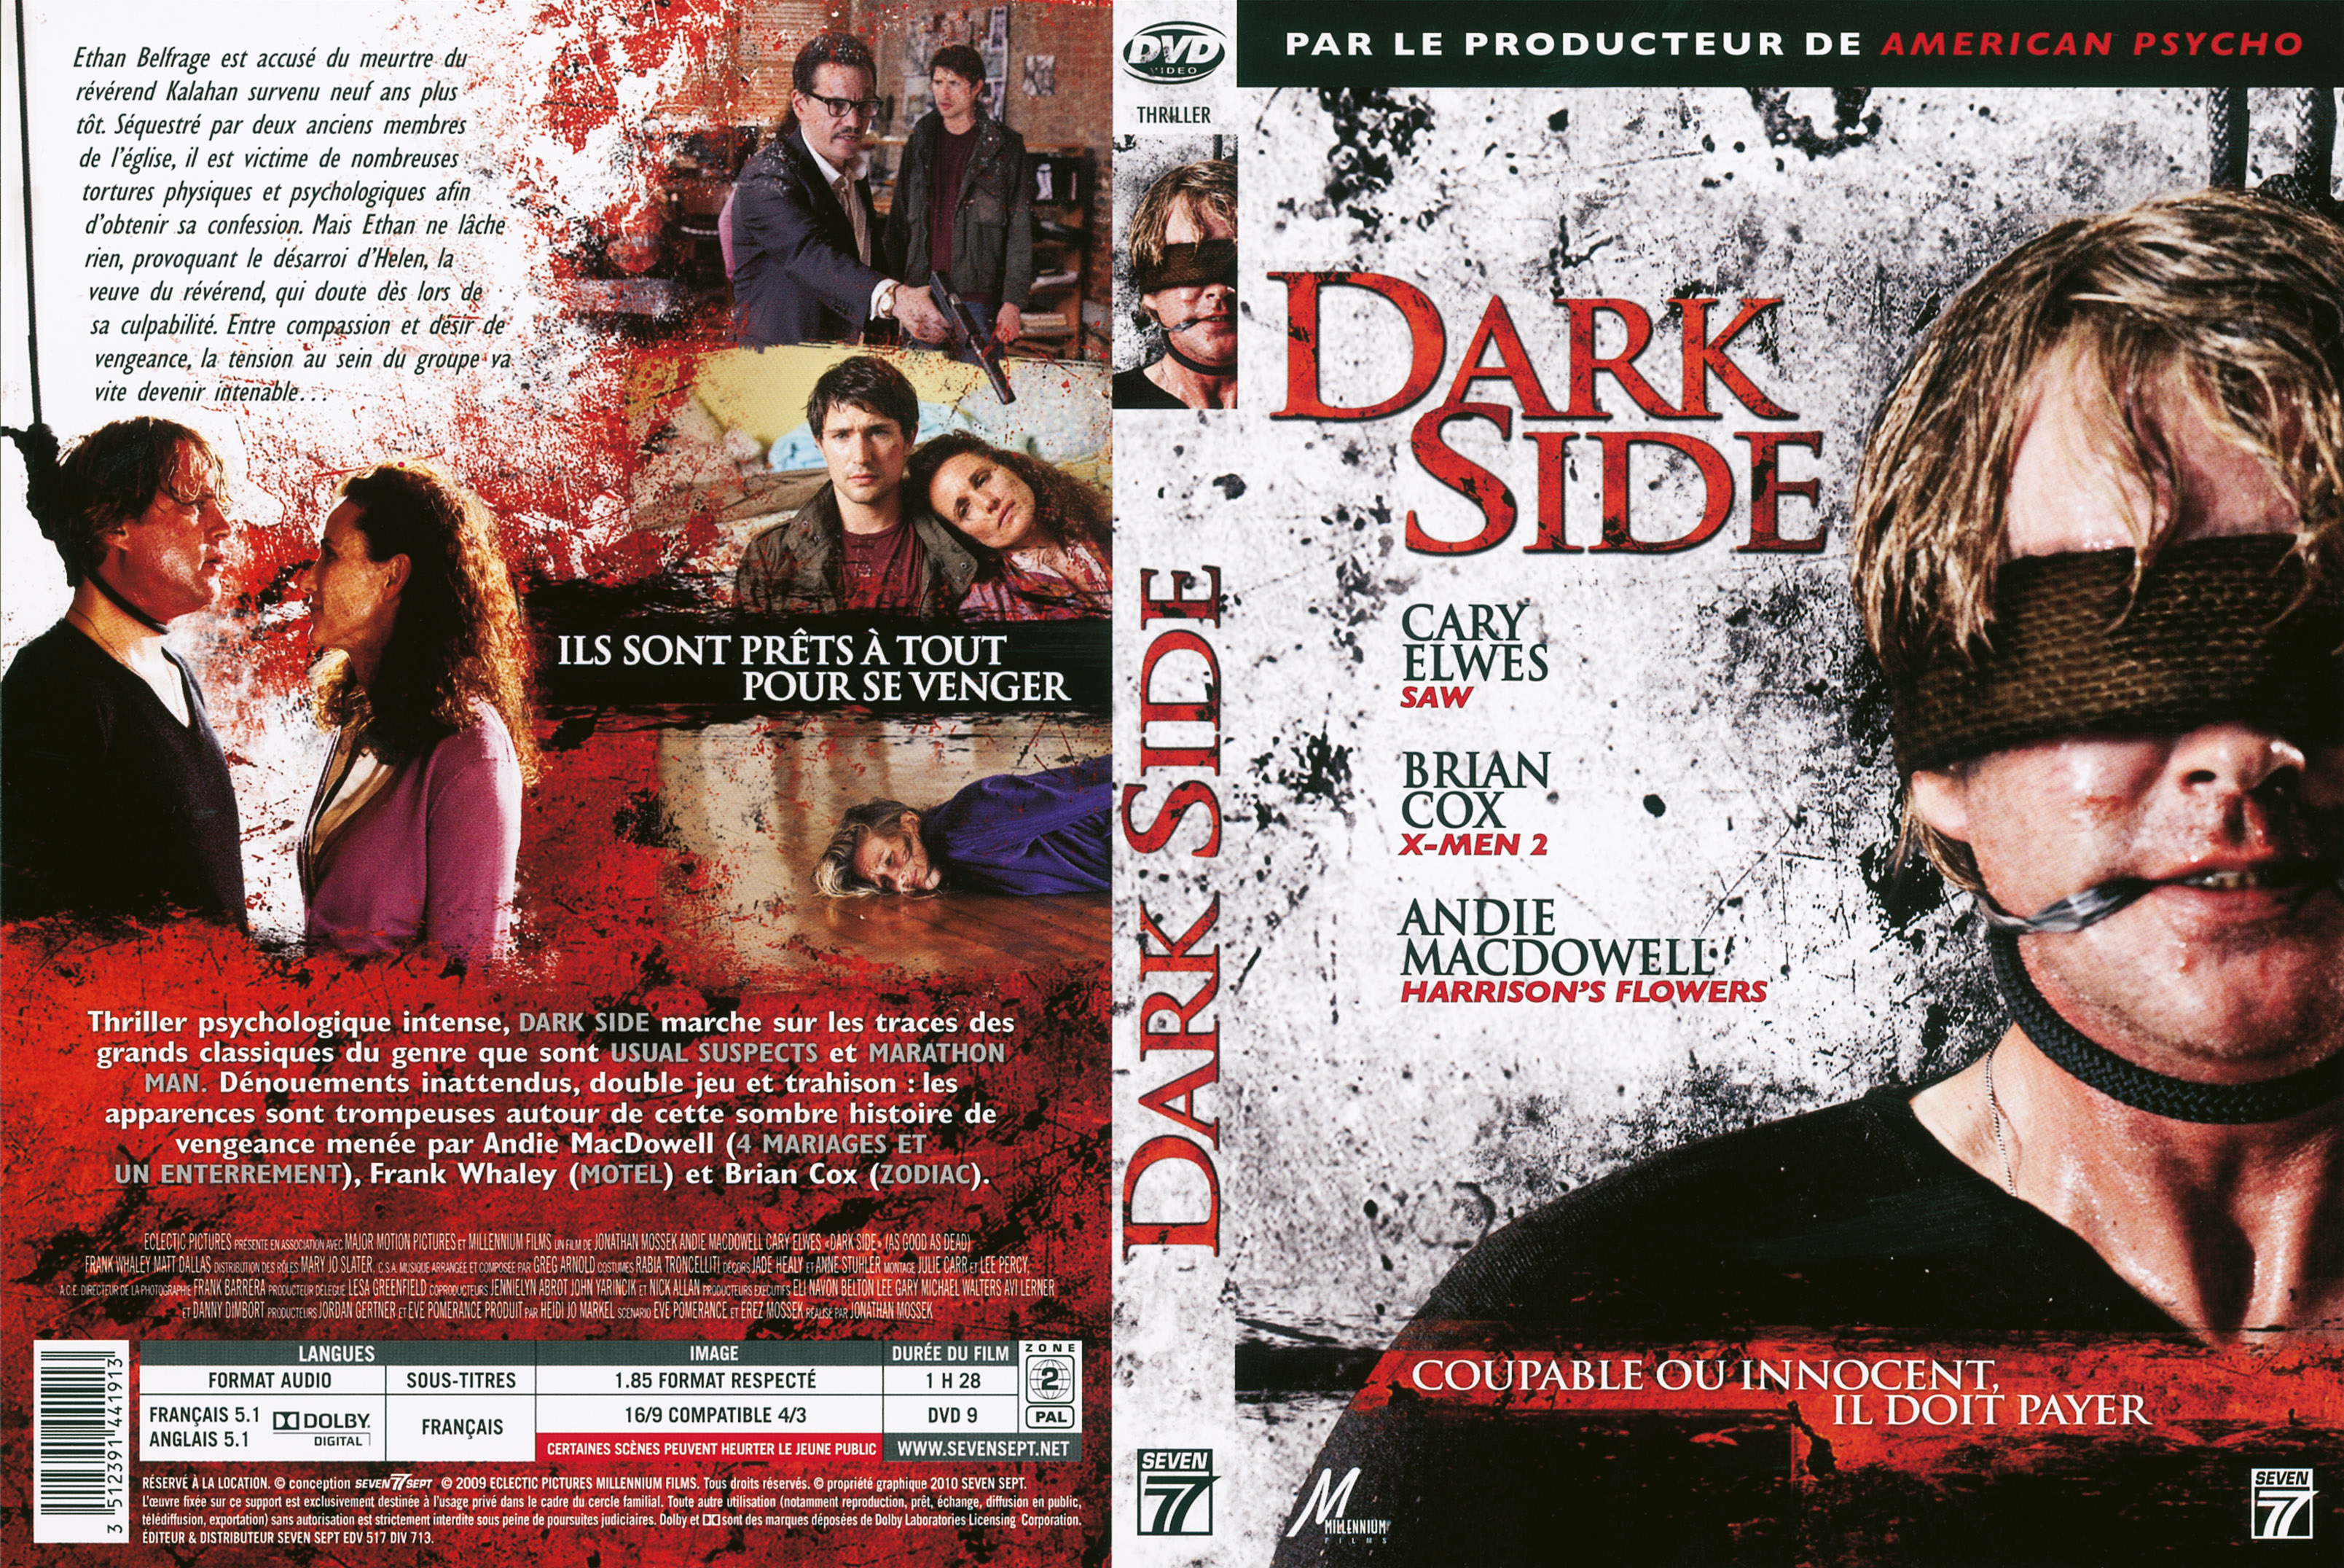 Jaquette DVD Dark side